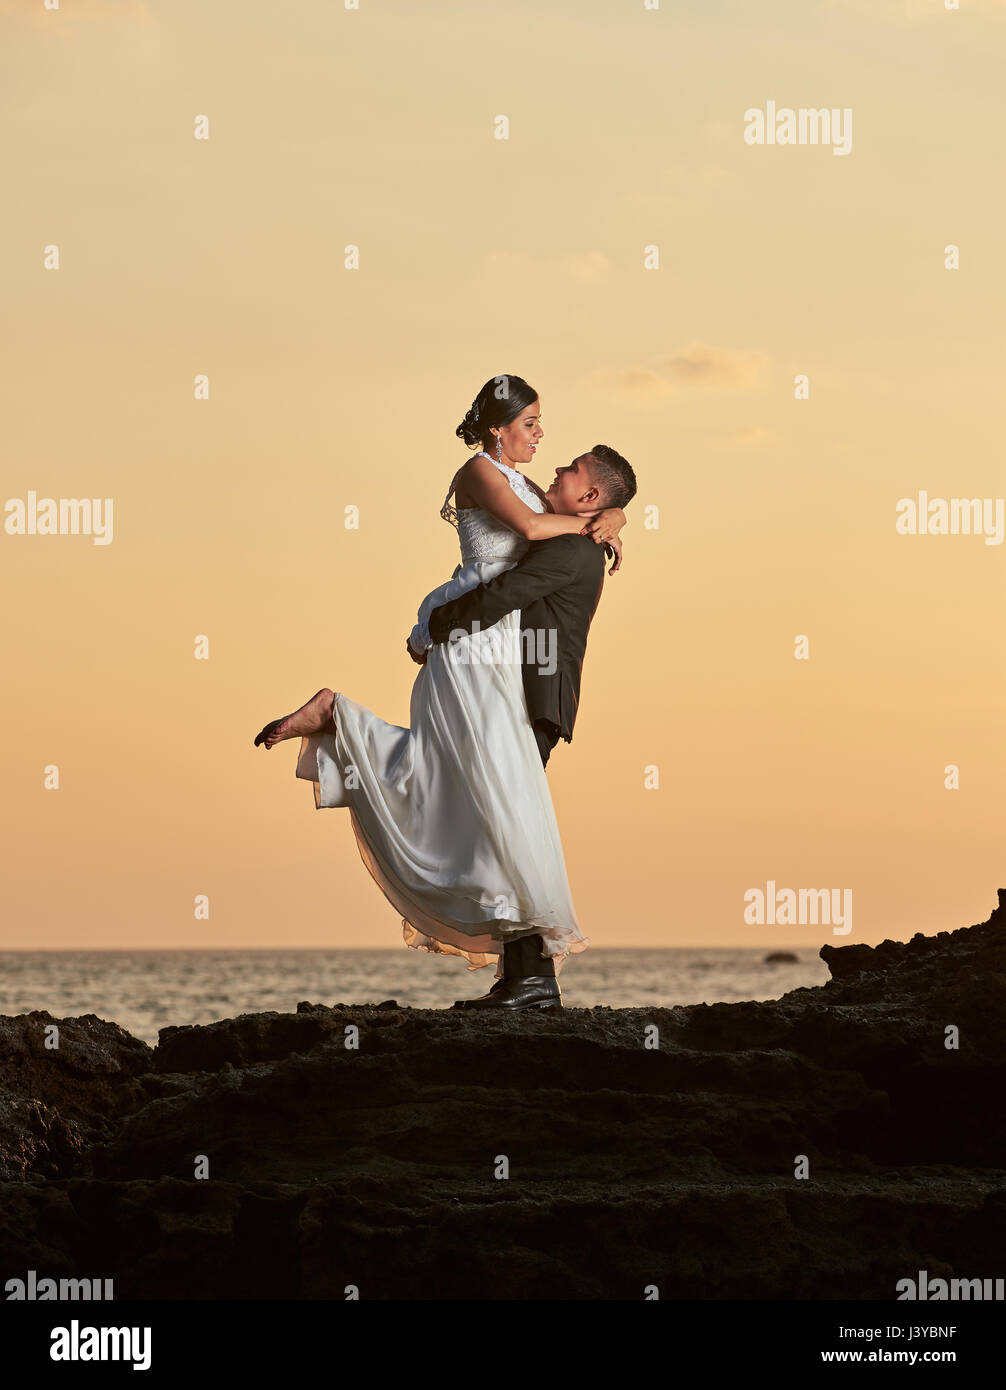 Groom lifting bride on orange sunset background Stock Photo